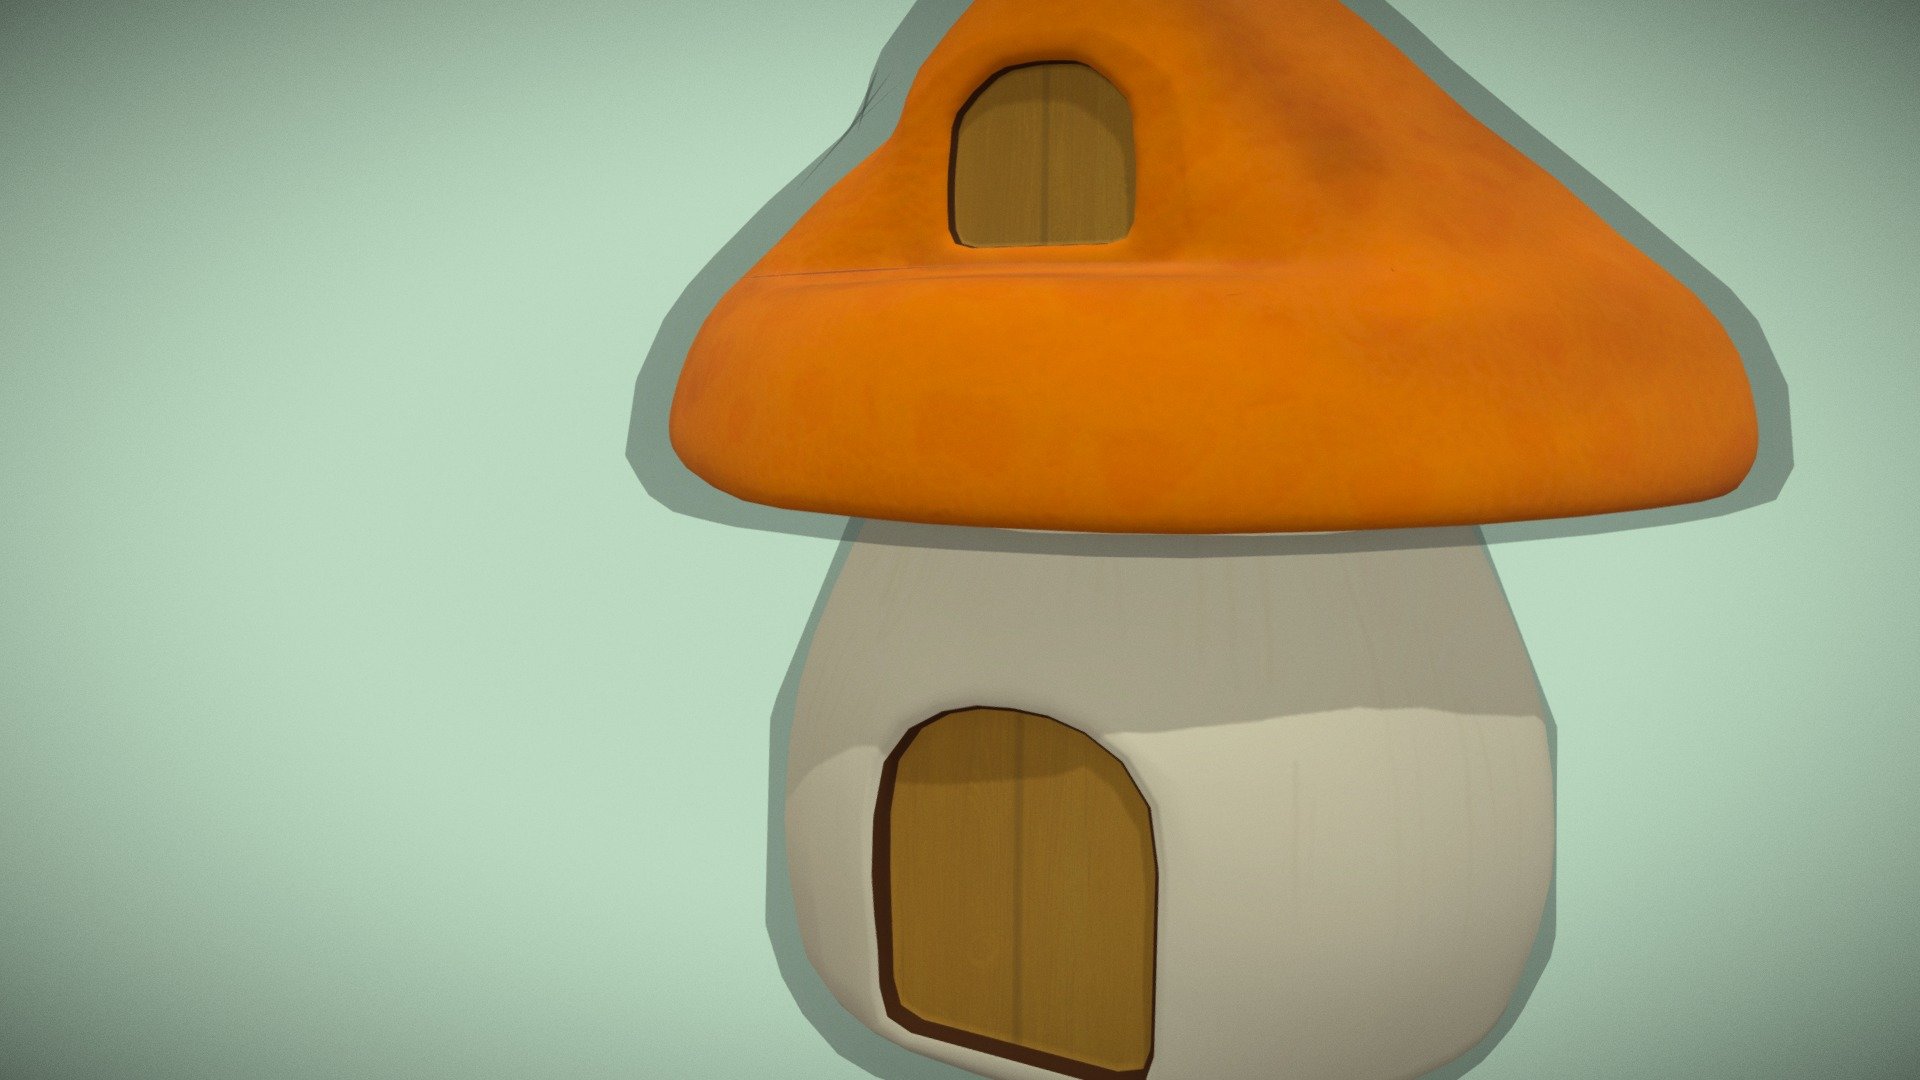 Modelled the Maplestory Logo - Mushroom House - Mushroom House(Maplestory) - 3D model by mekiix 3d model